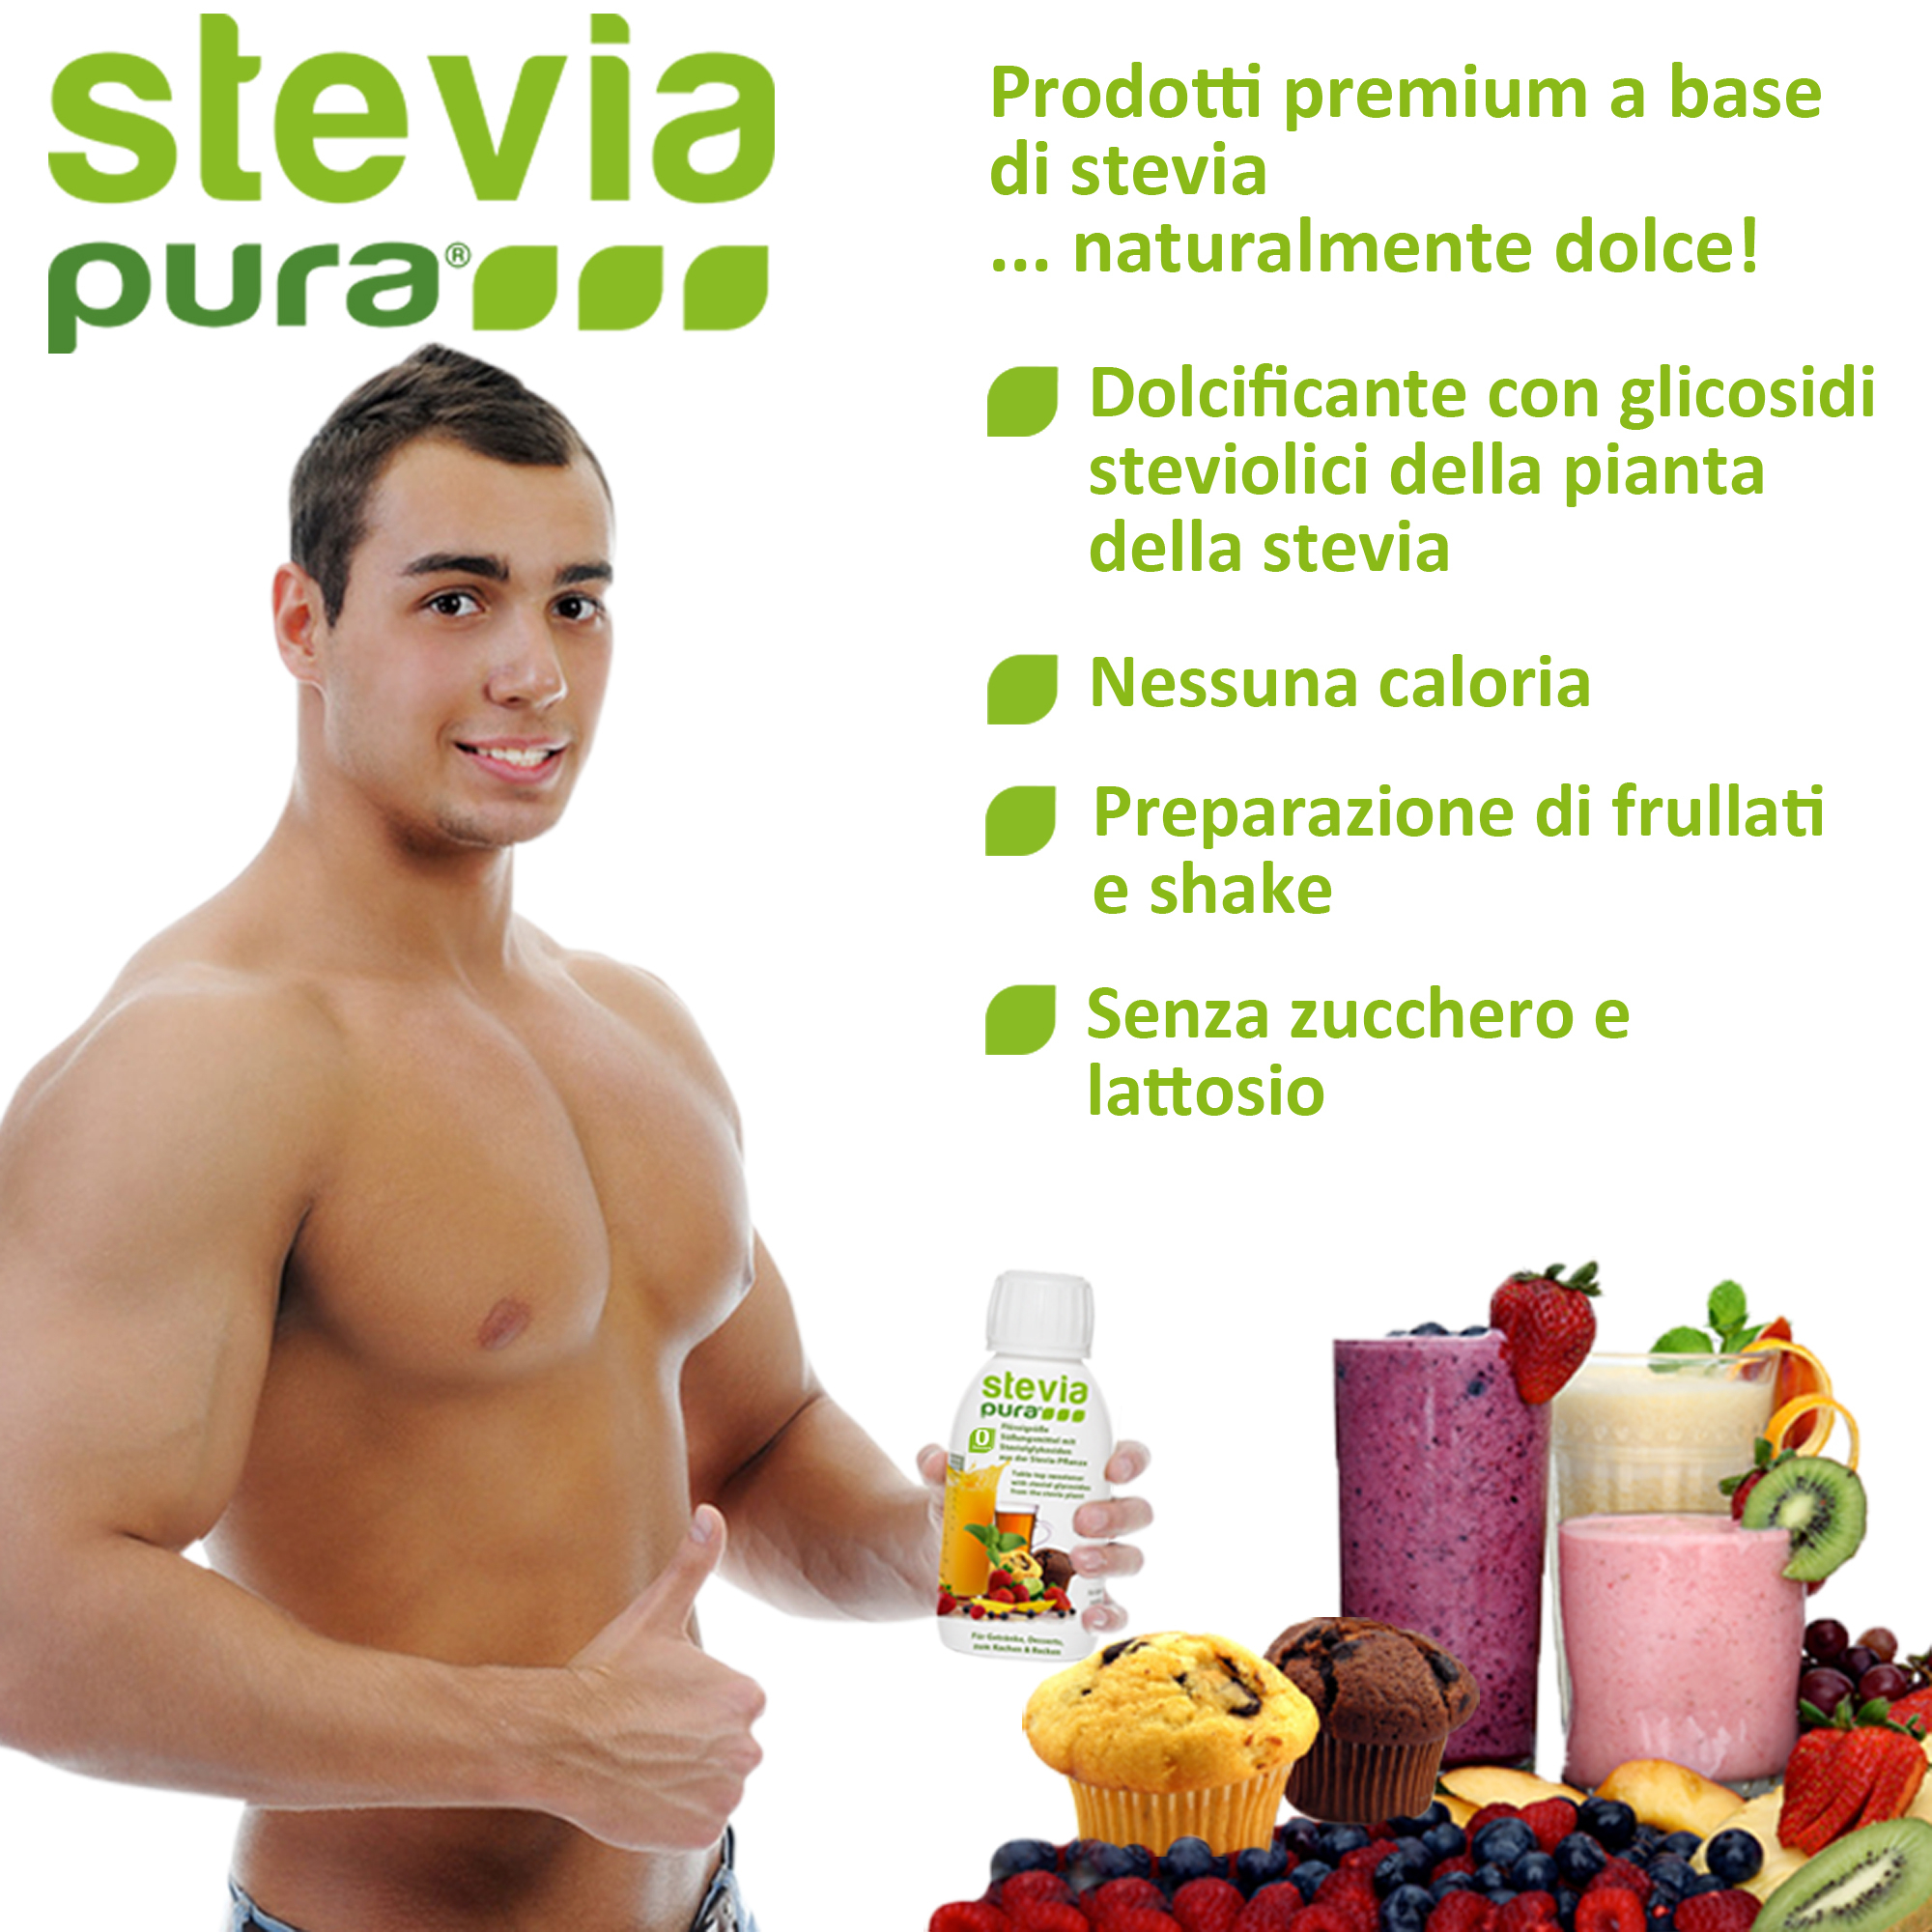 L'uso della Stevia Liquida per gli atleti per dolcificare bevande energetiche e frullati proteici.